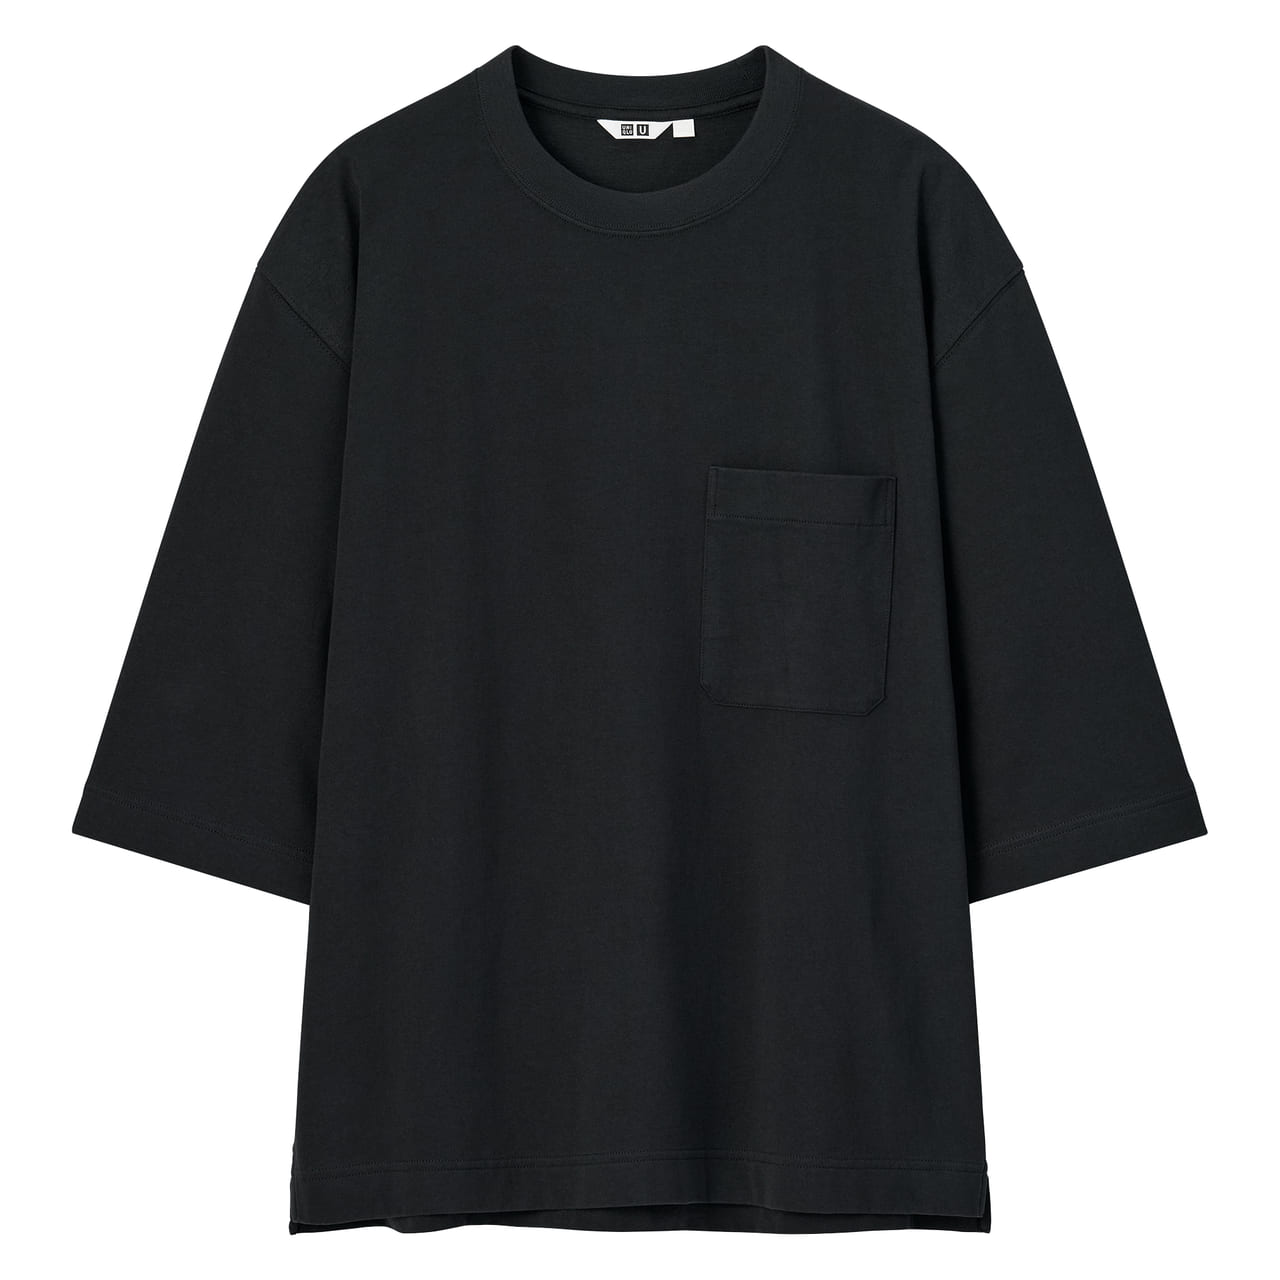 ユニクロ ユー（Uniqlo U）のクルーネックTシャツ(7分袖) ¥1,990